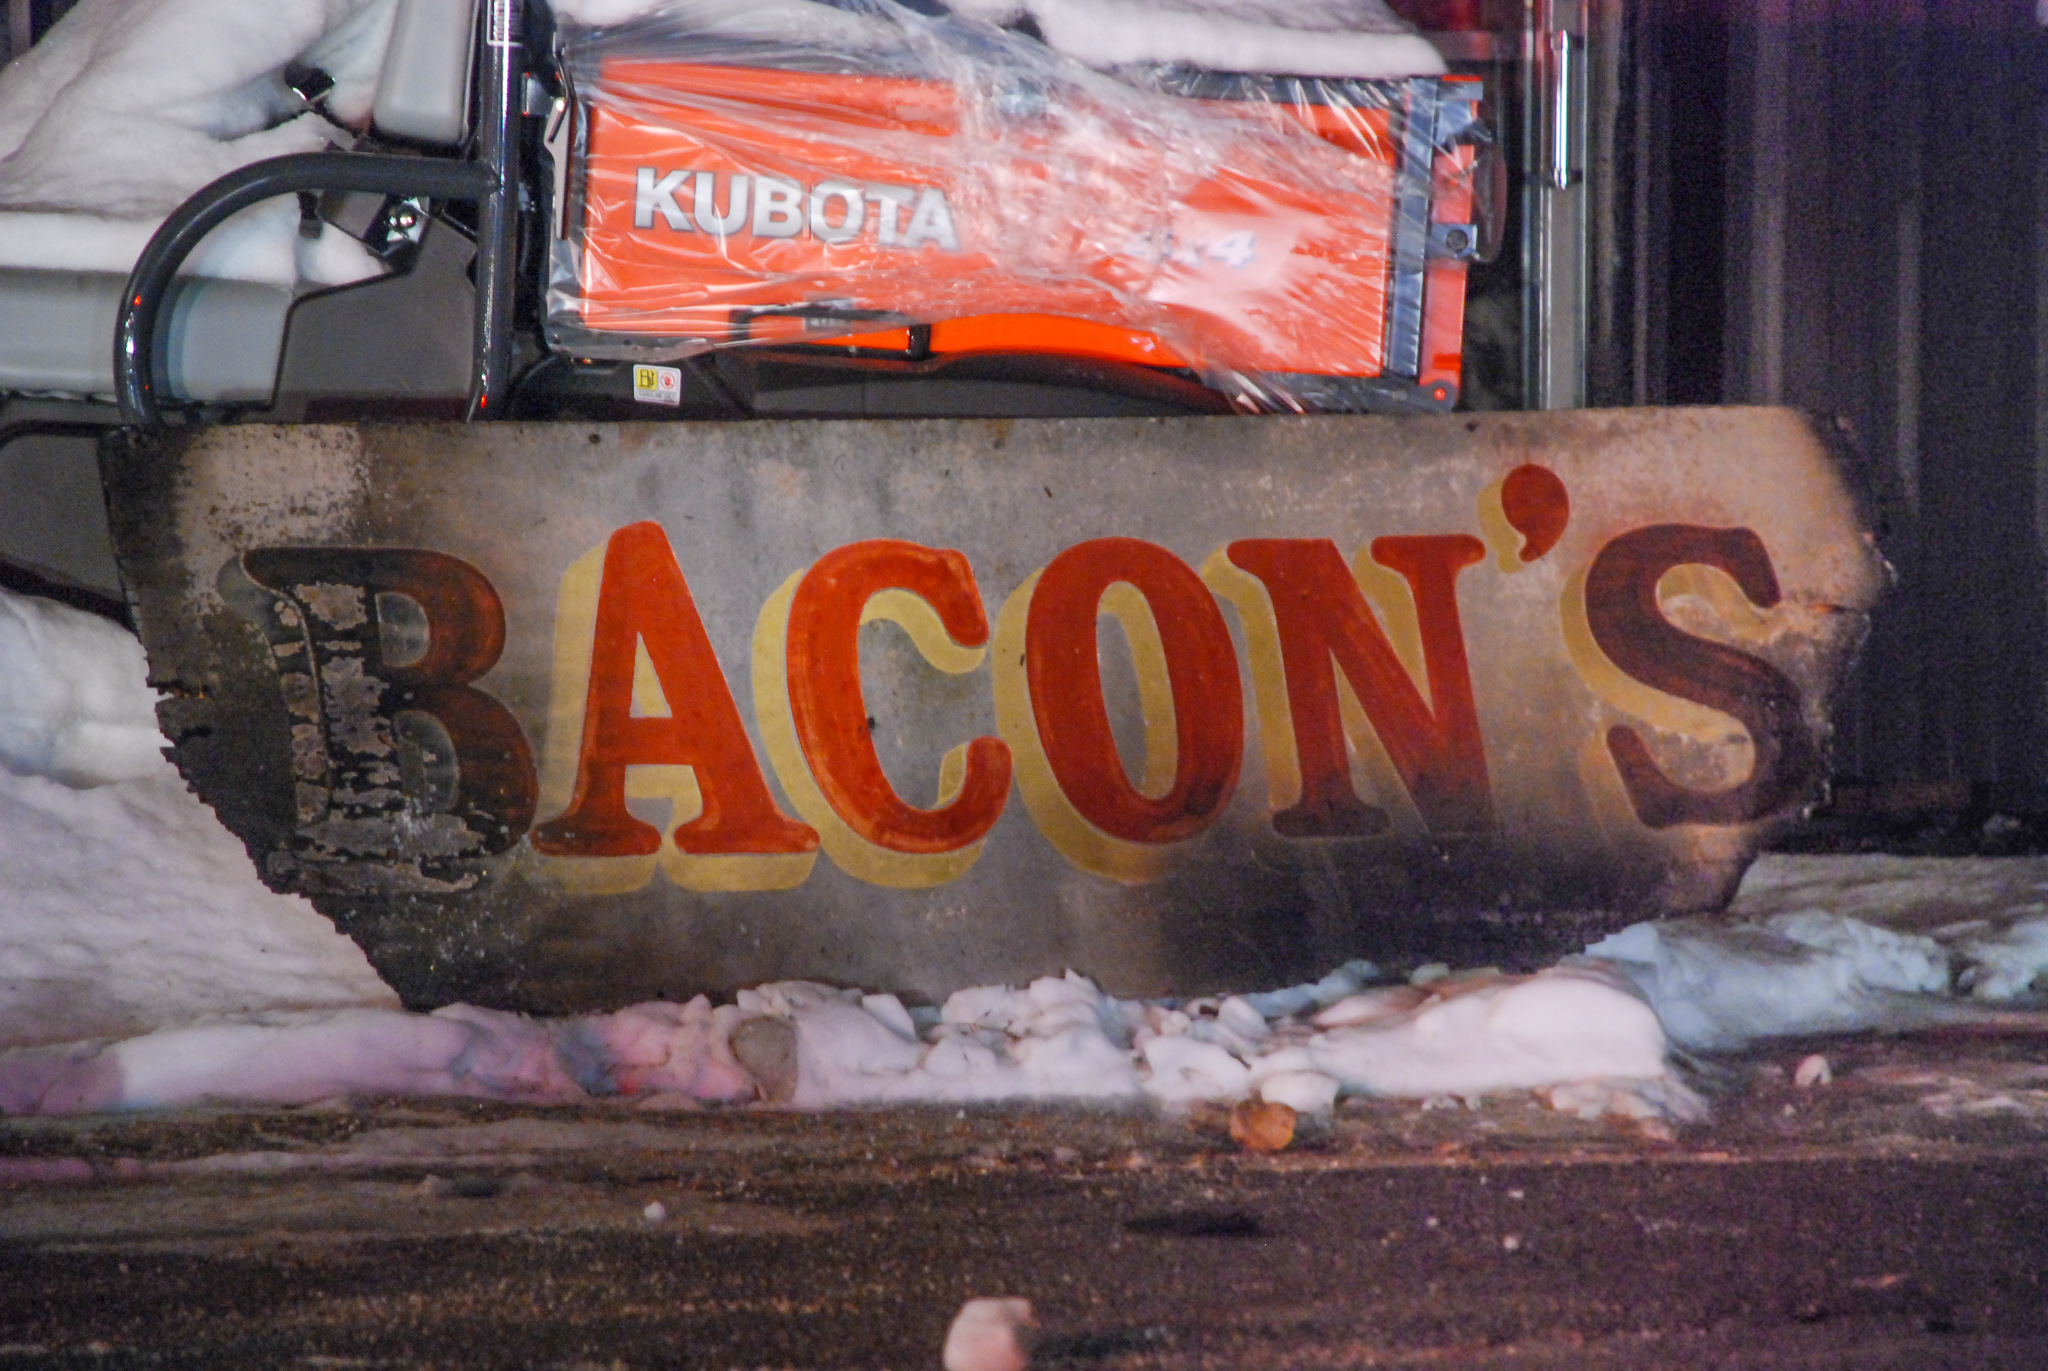 Bacon's Fire, Williamsburg, MA